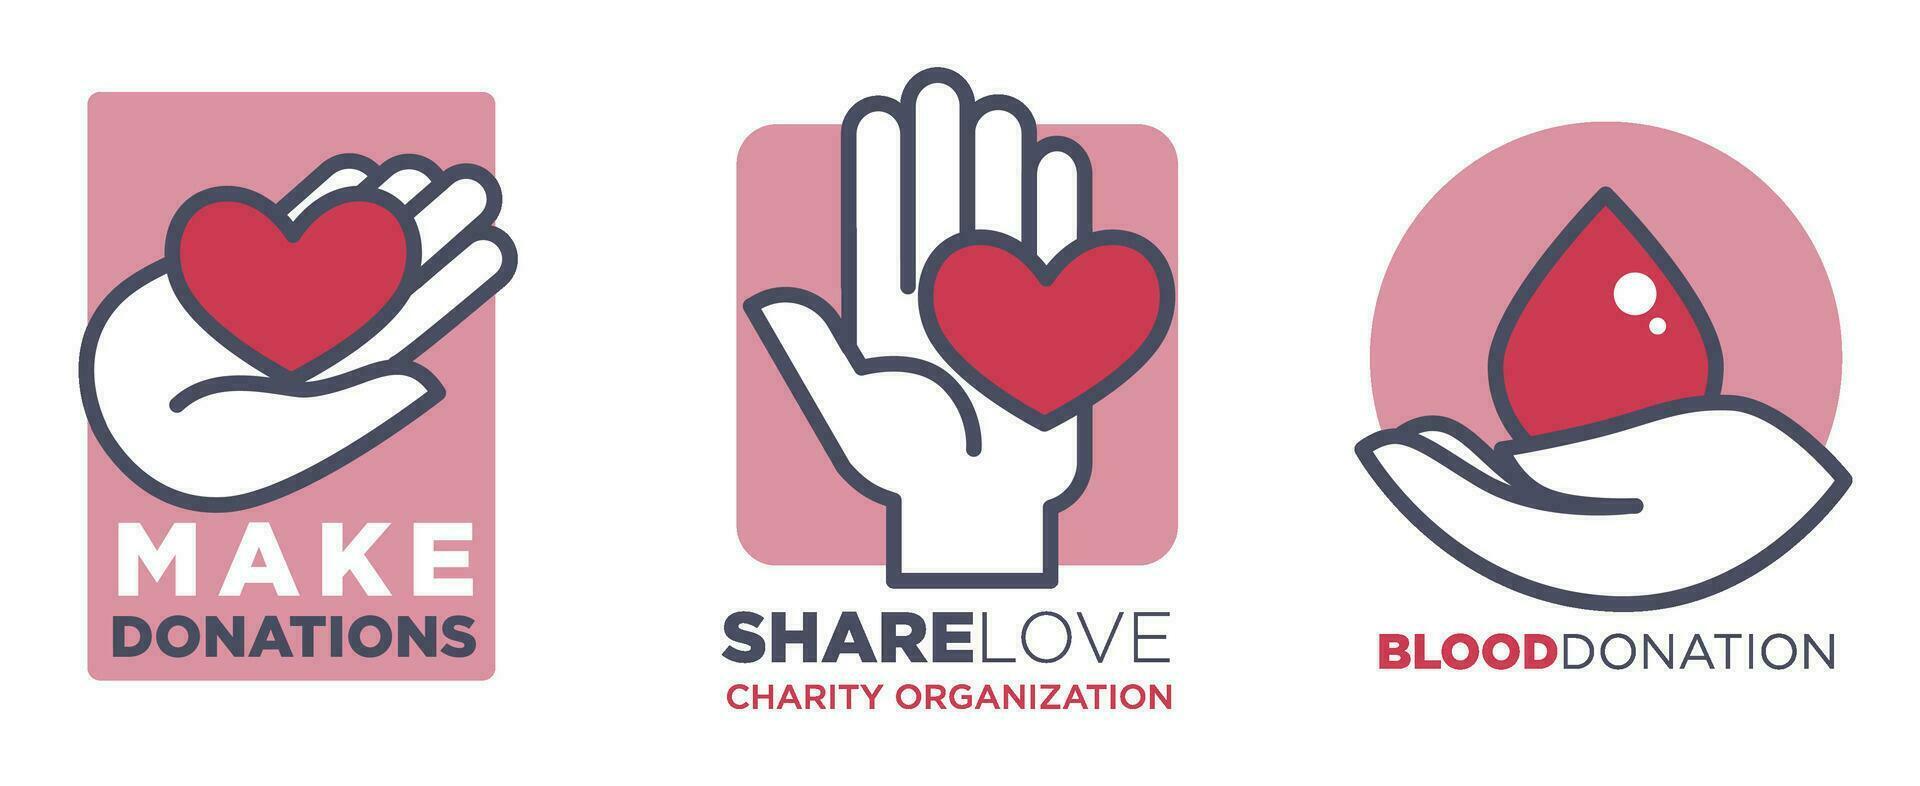 göra donation och dela med sig kärlek, välgörenhet volontär vektor